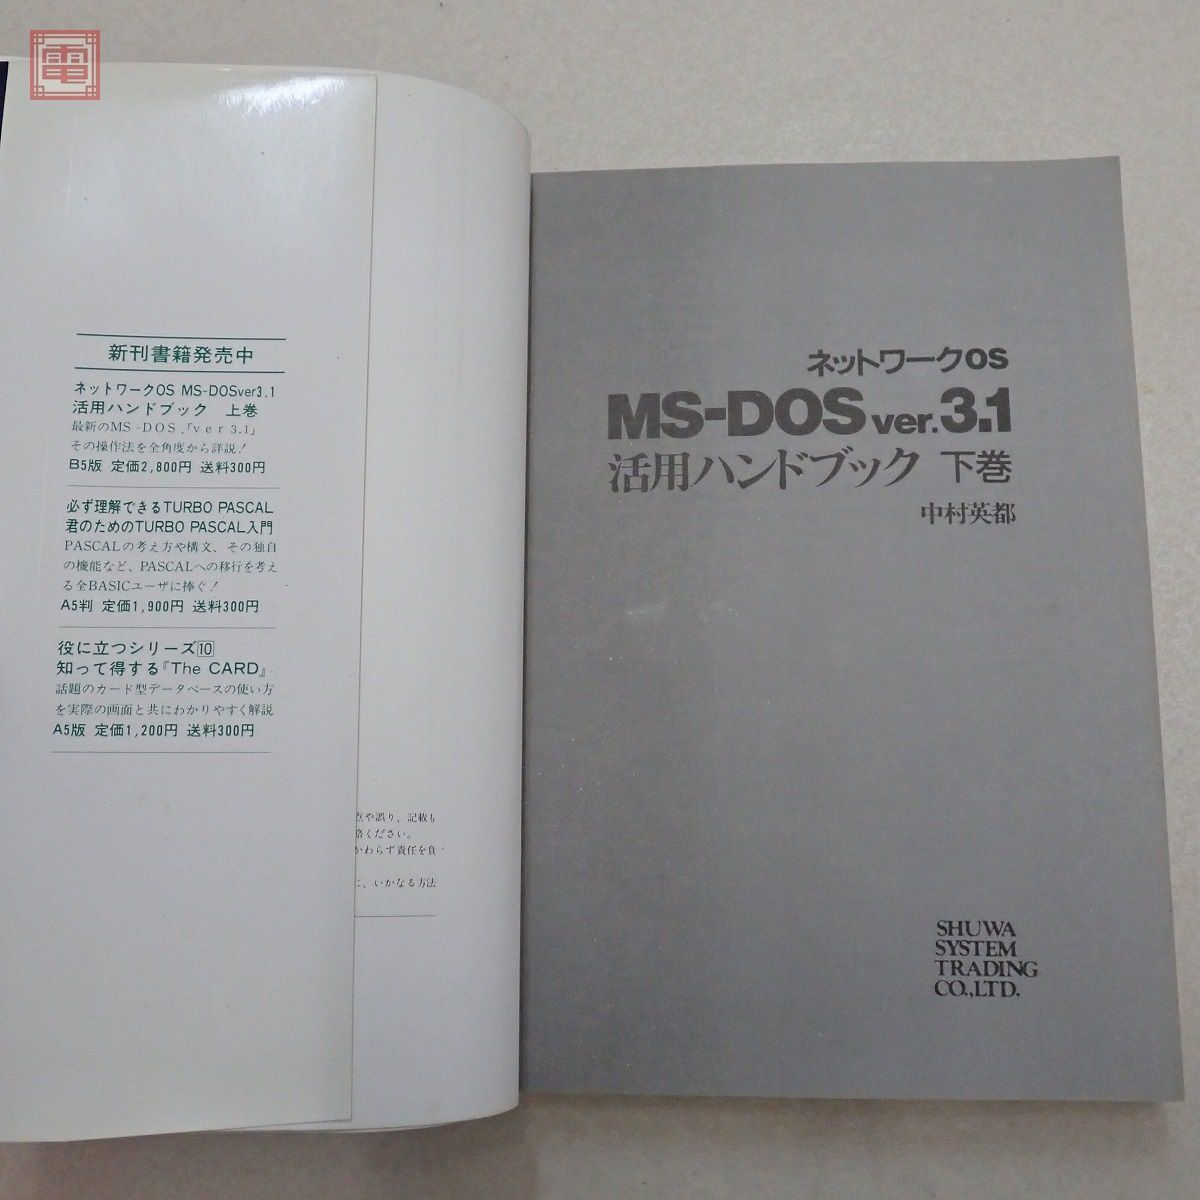 書籍 ネットワークOS MS-DOS ver.3.1 上巻/下巻 中村英都 まとめて2冊セット 秀和システム SHUWA SYSTEM【20_画像3